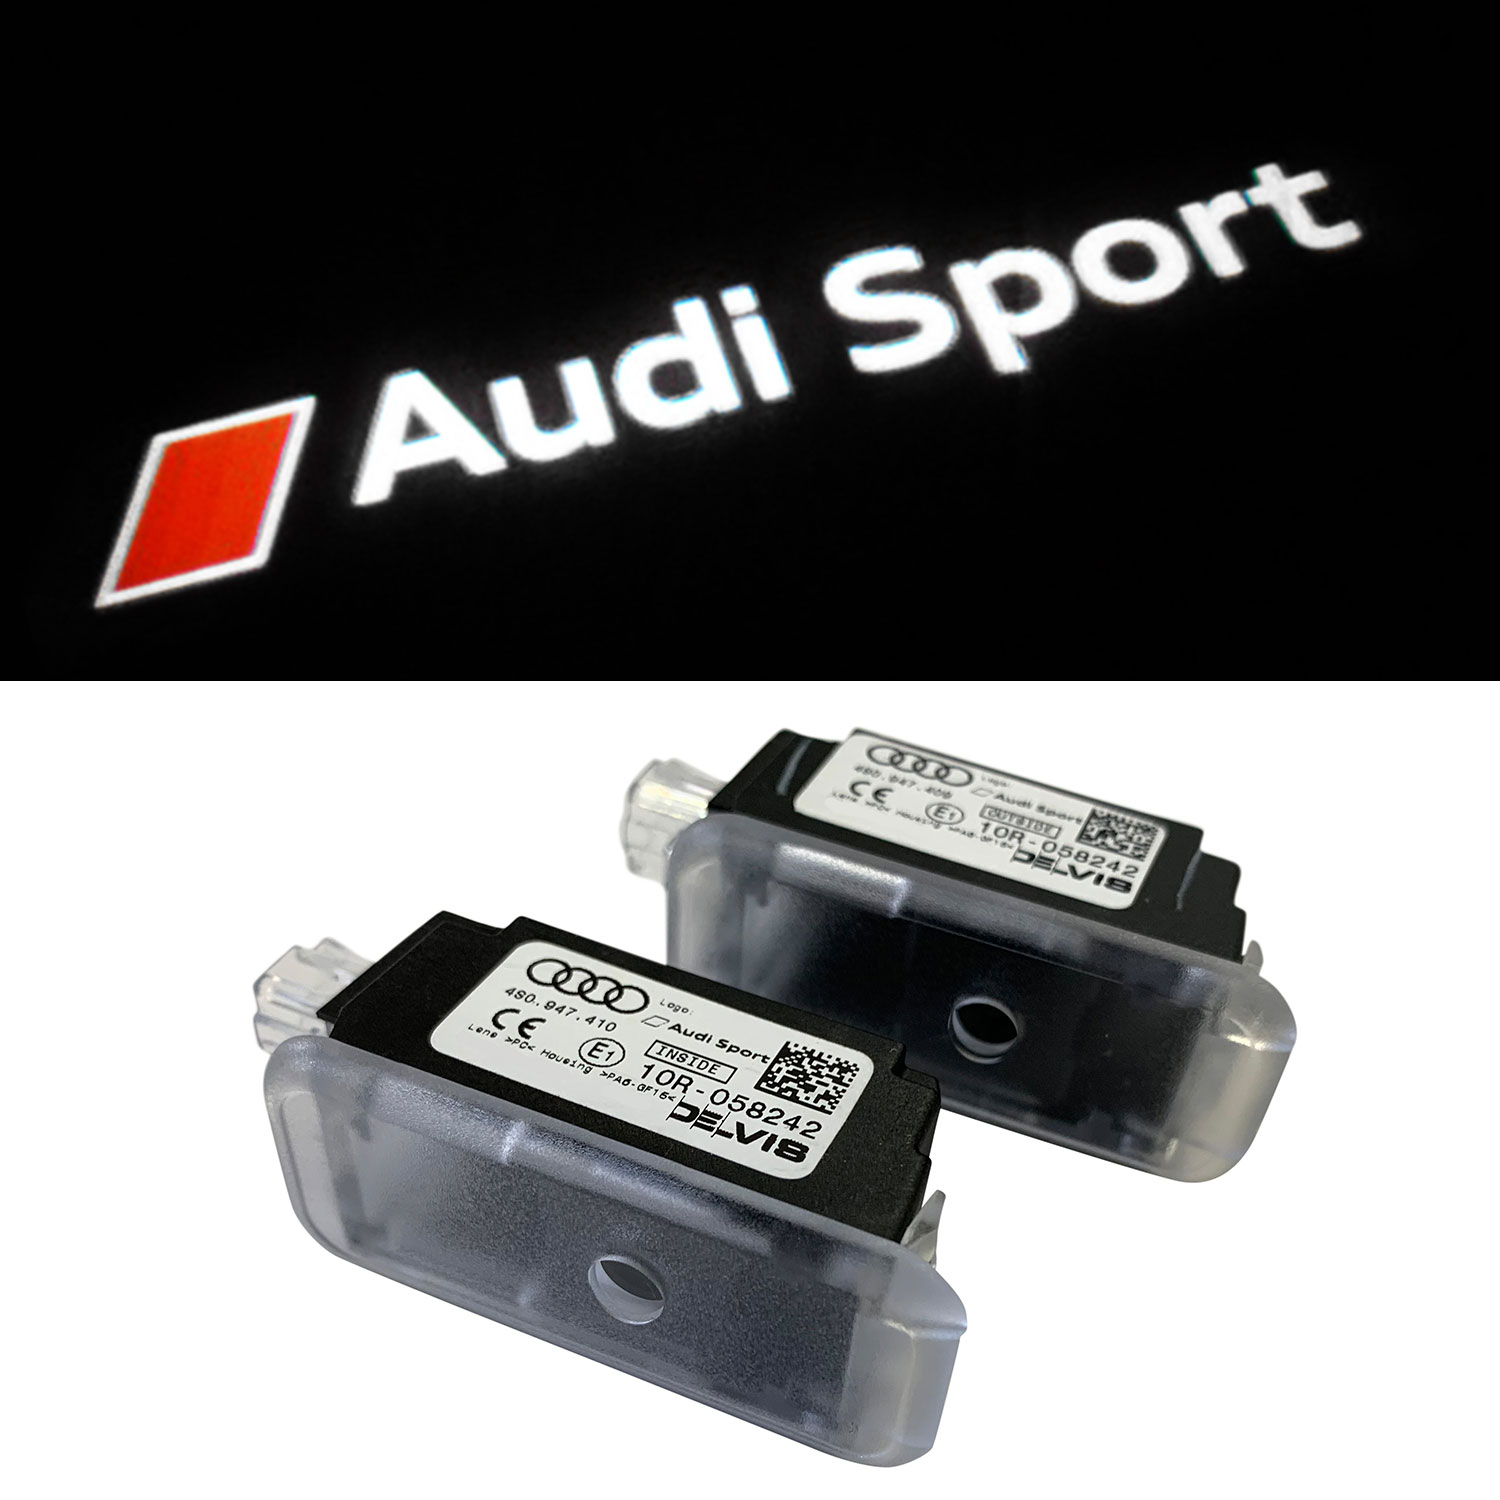 Original Audi Sport LED Einstiegsbeleuchtung Tür Logo Projektor für viele  Audi